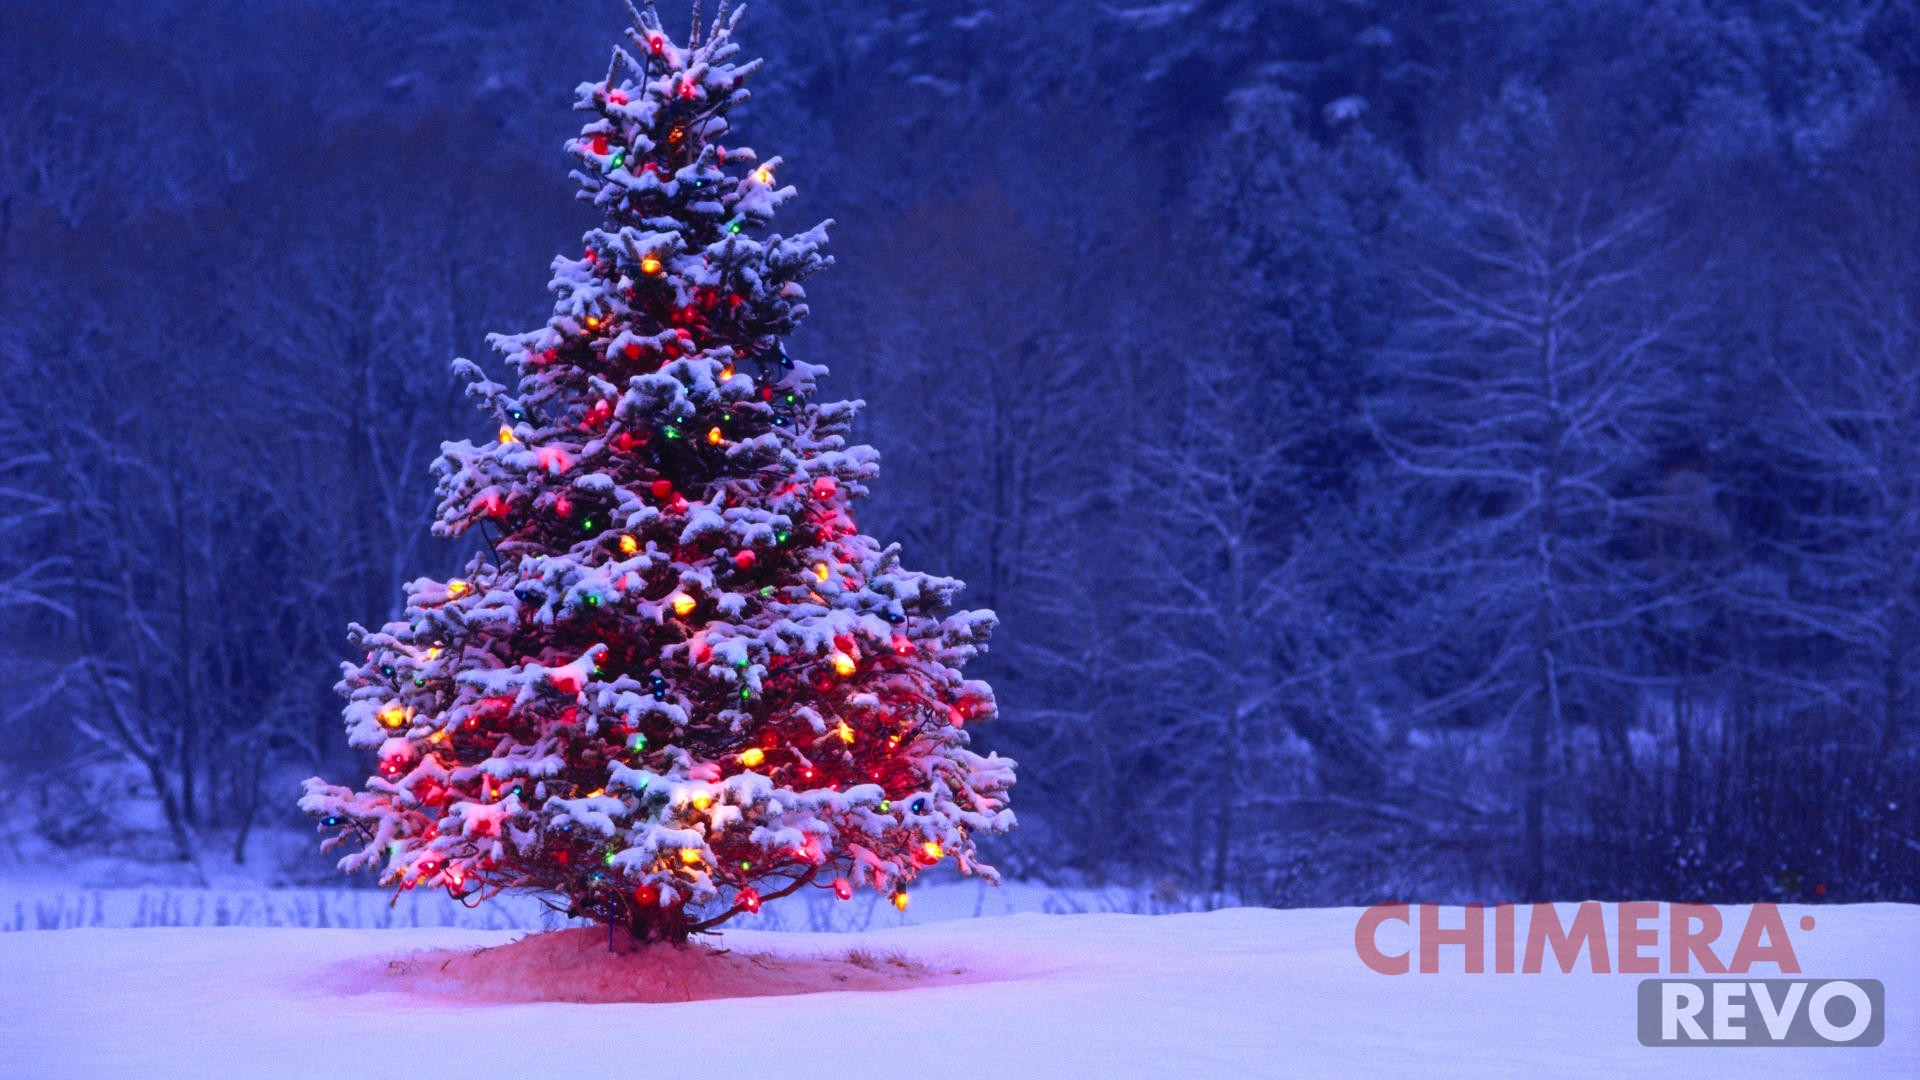 16 bellissimi sfondi di Natale per PC smartphone e tablet   Chimera